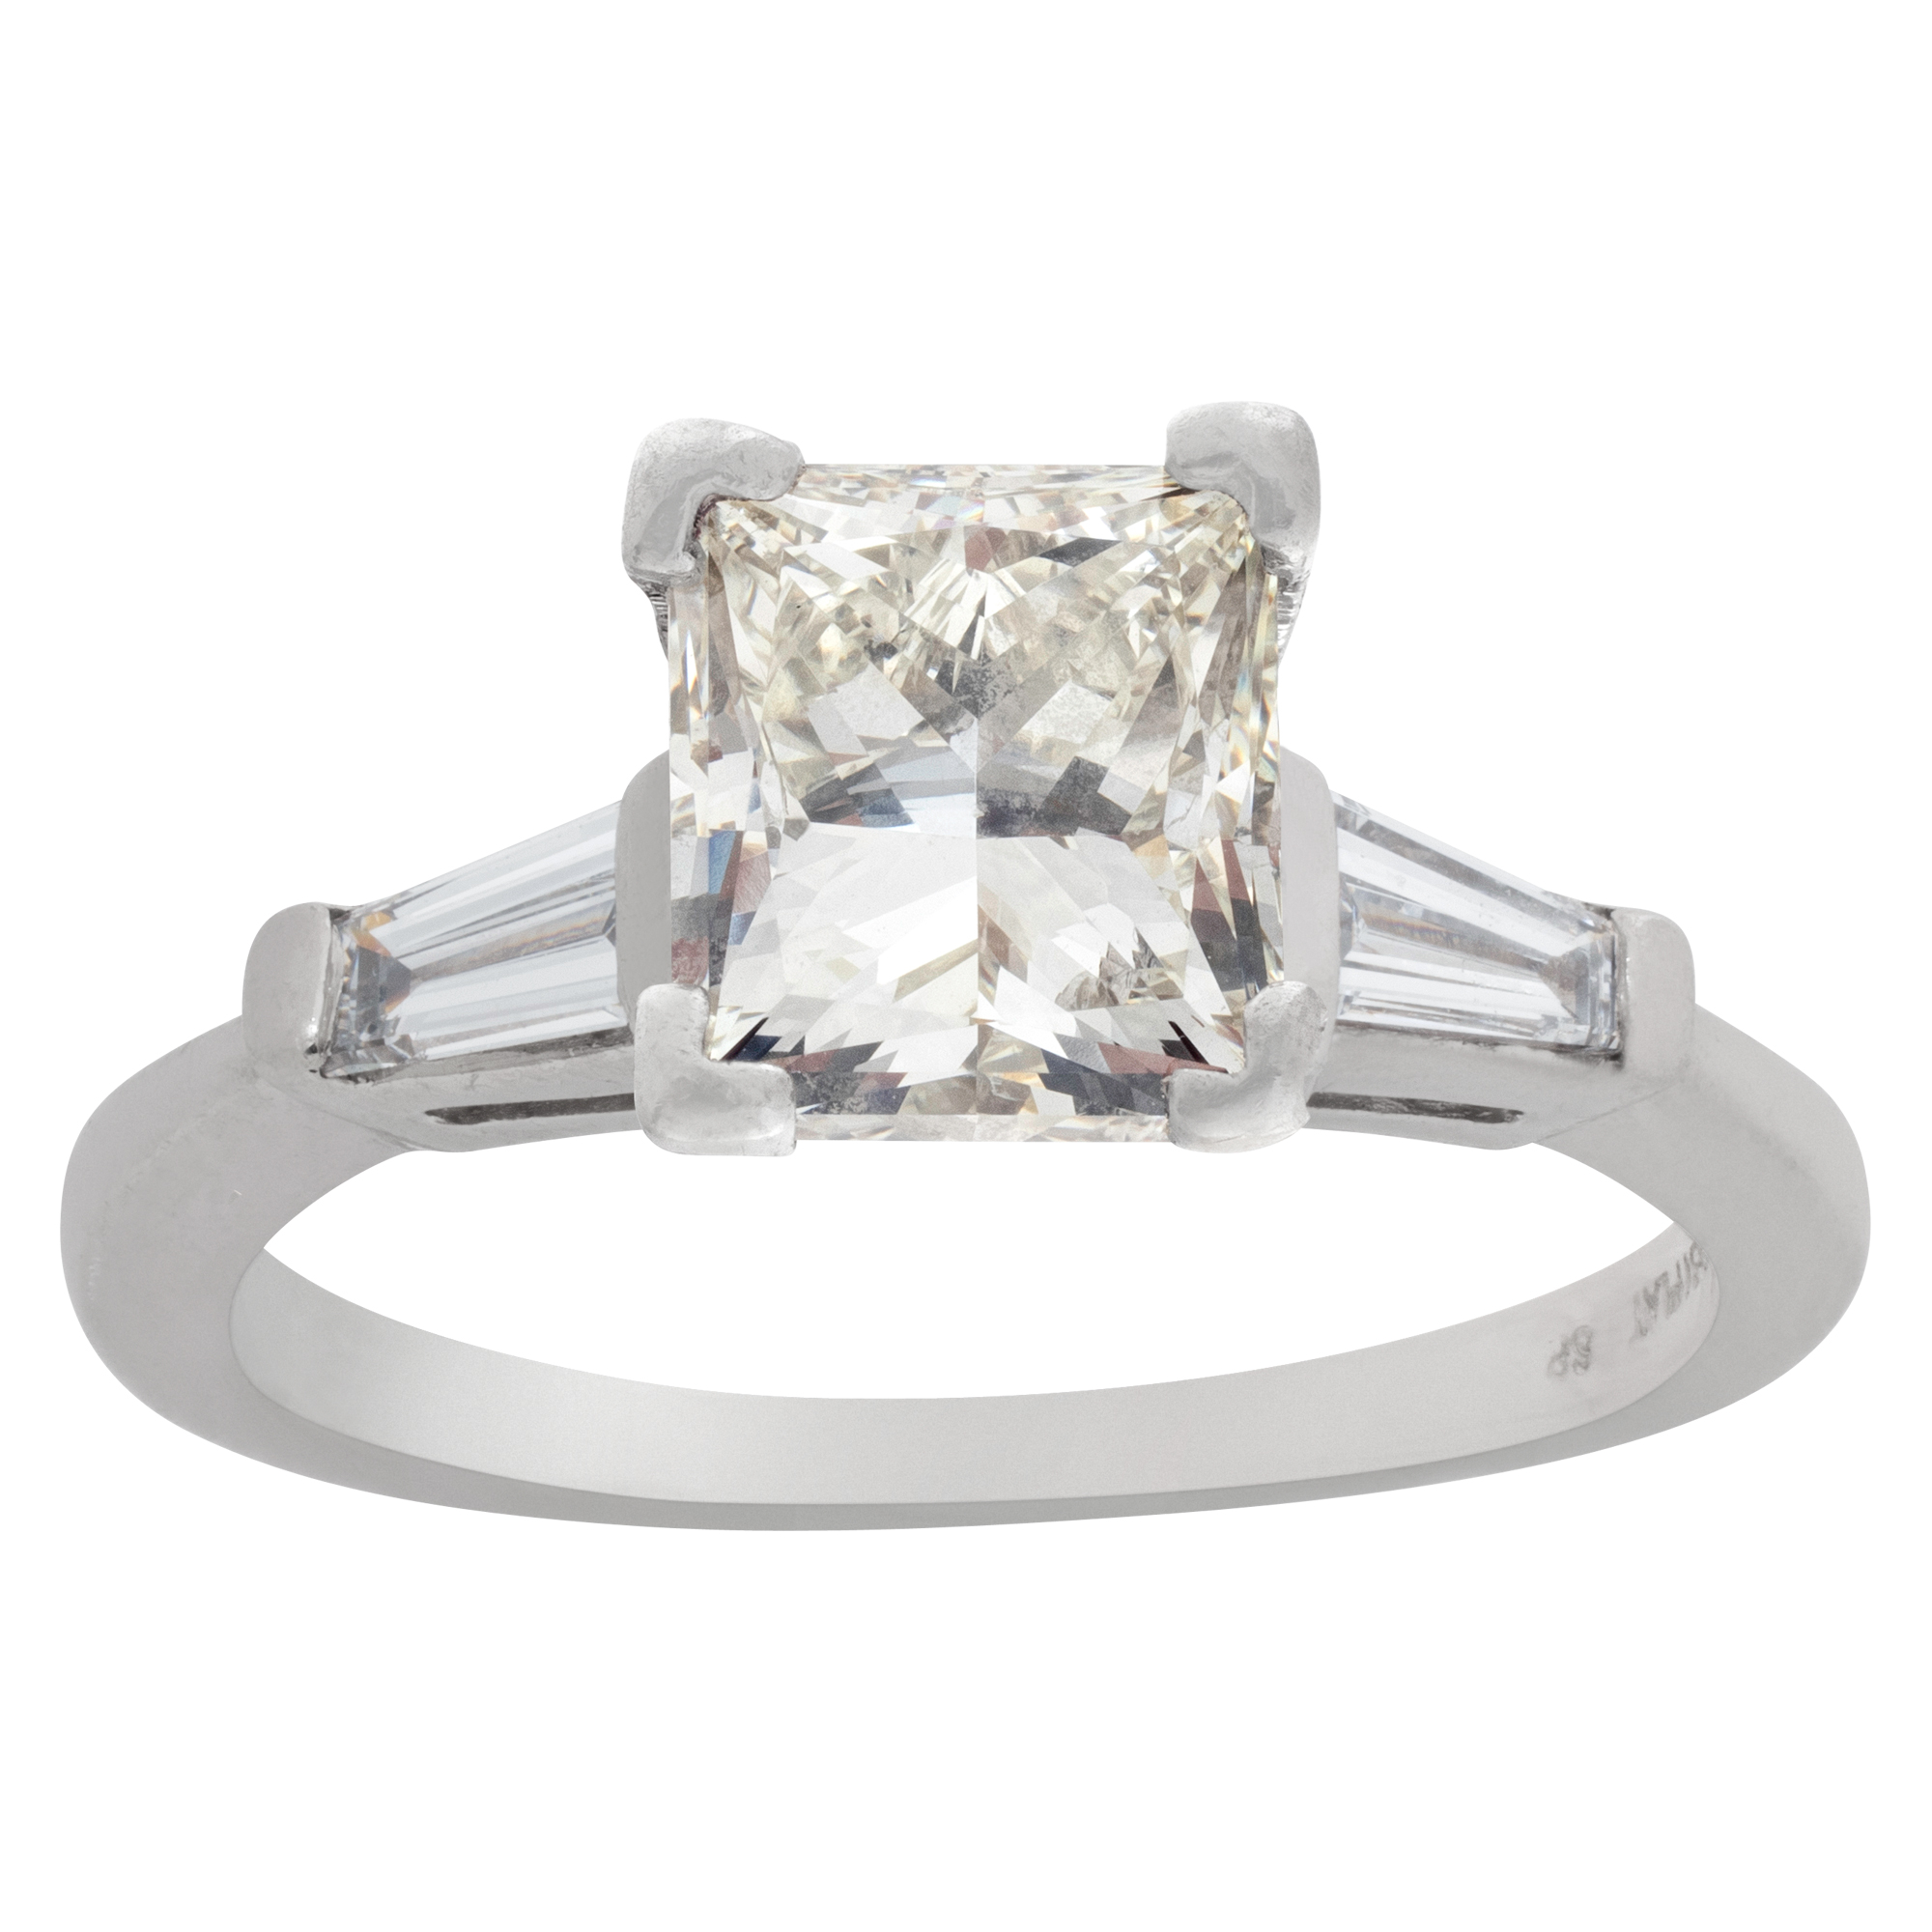 GIA certified rectangular brilliant cut 2 carat (K color, SI1 claity) diamond ring in platinum